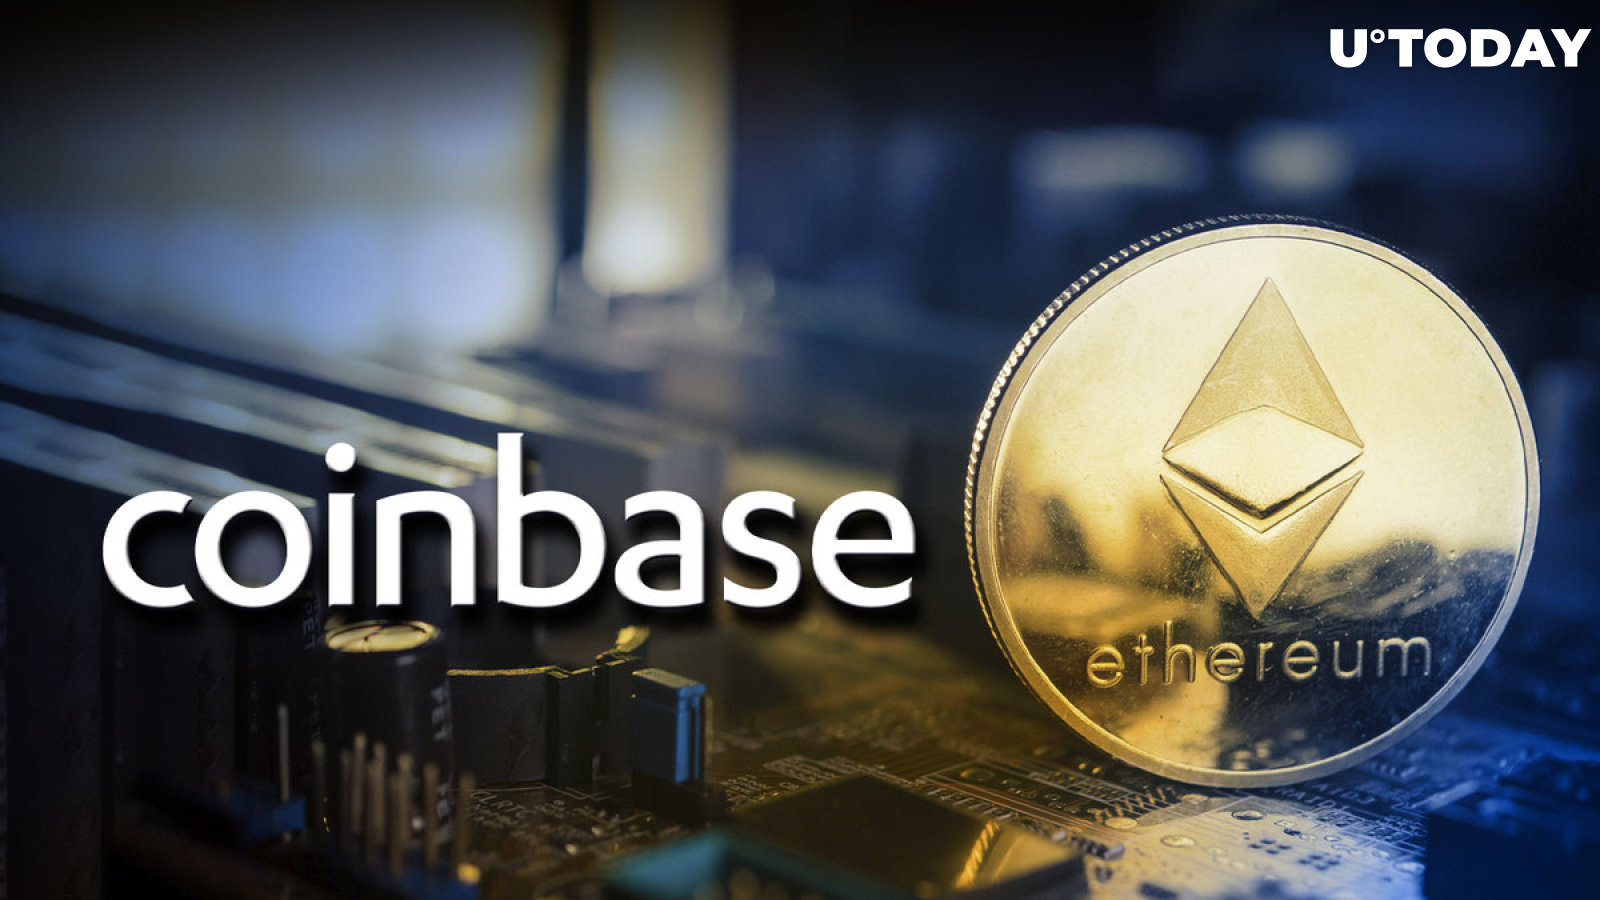 Coinbase'is maandub tohutult 10,911 XNUMX ETH-d; Mis on liikumise taga?